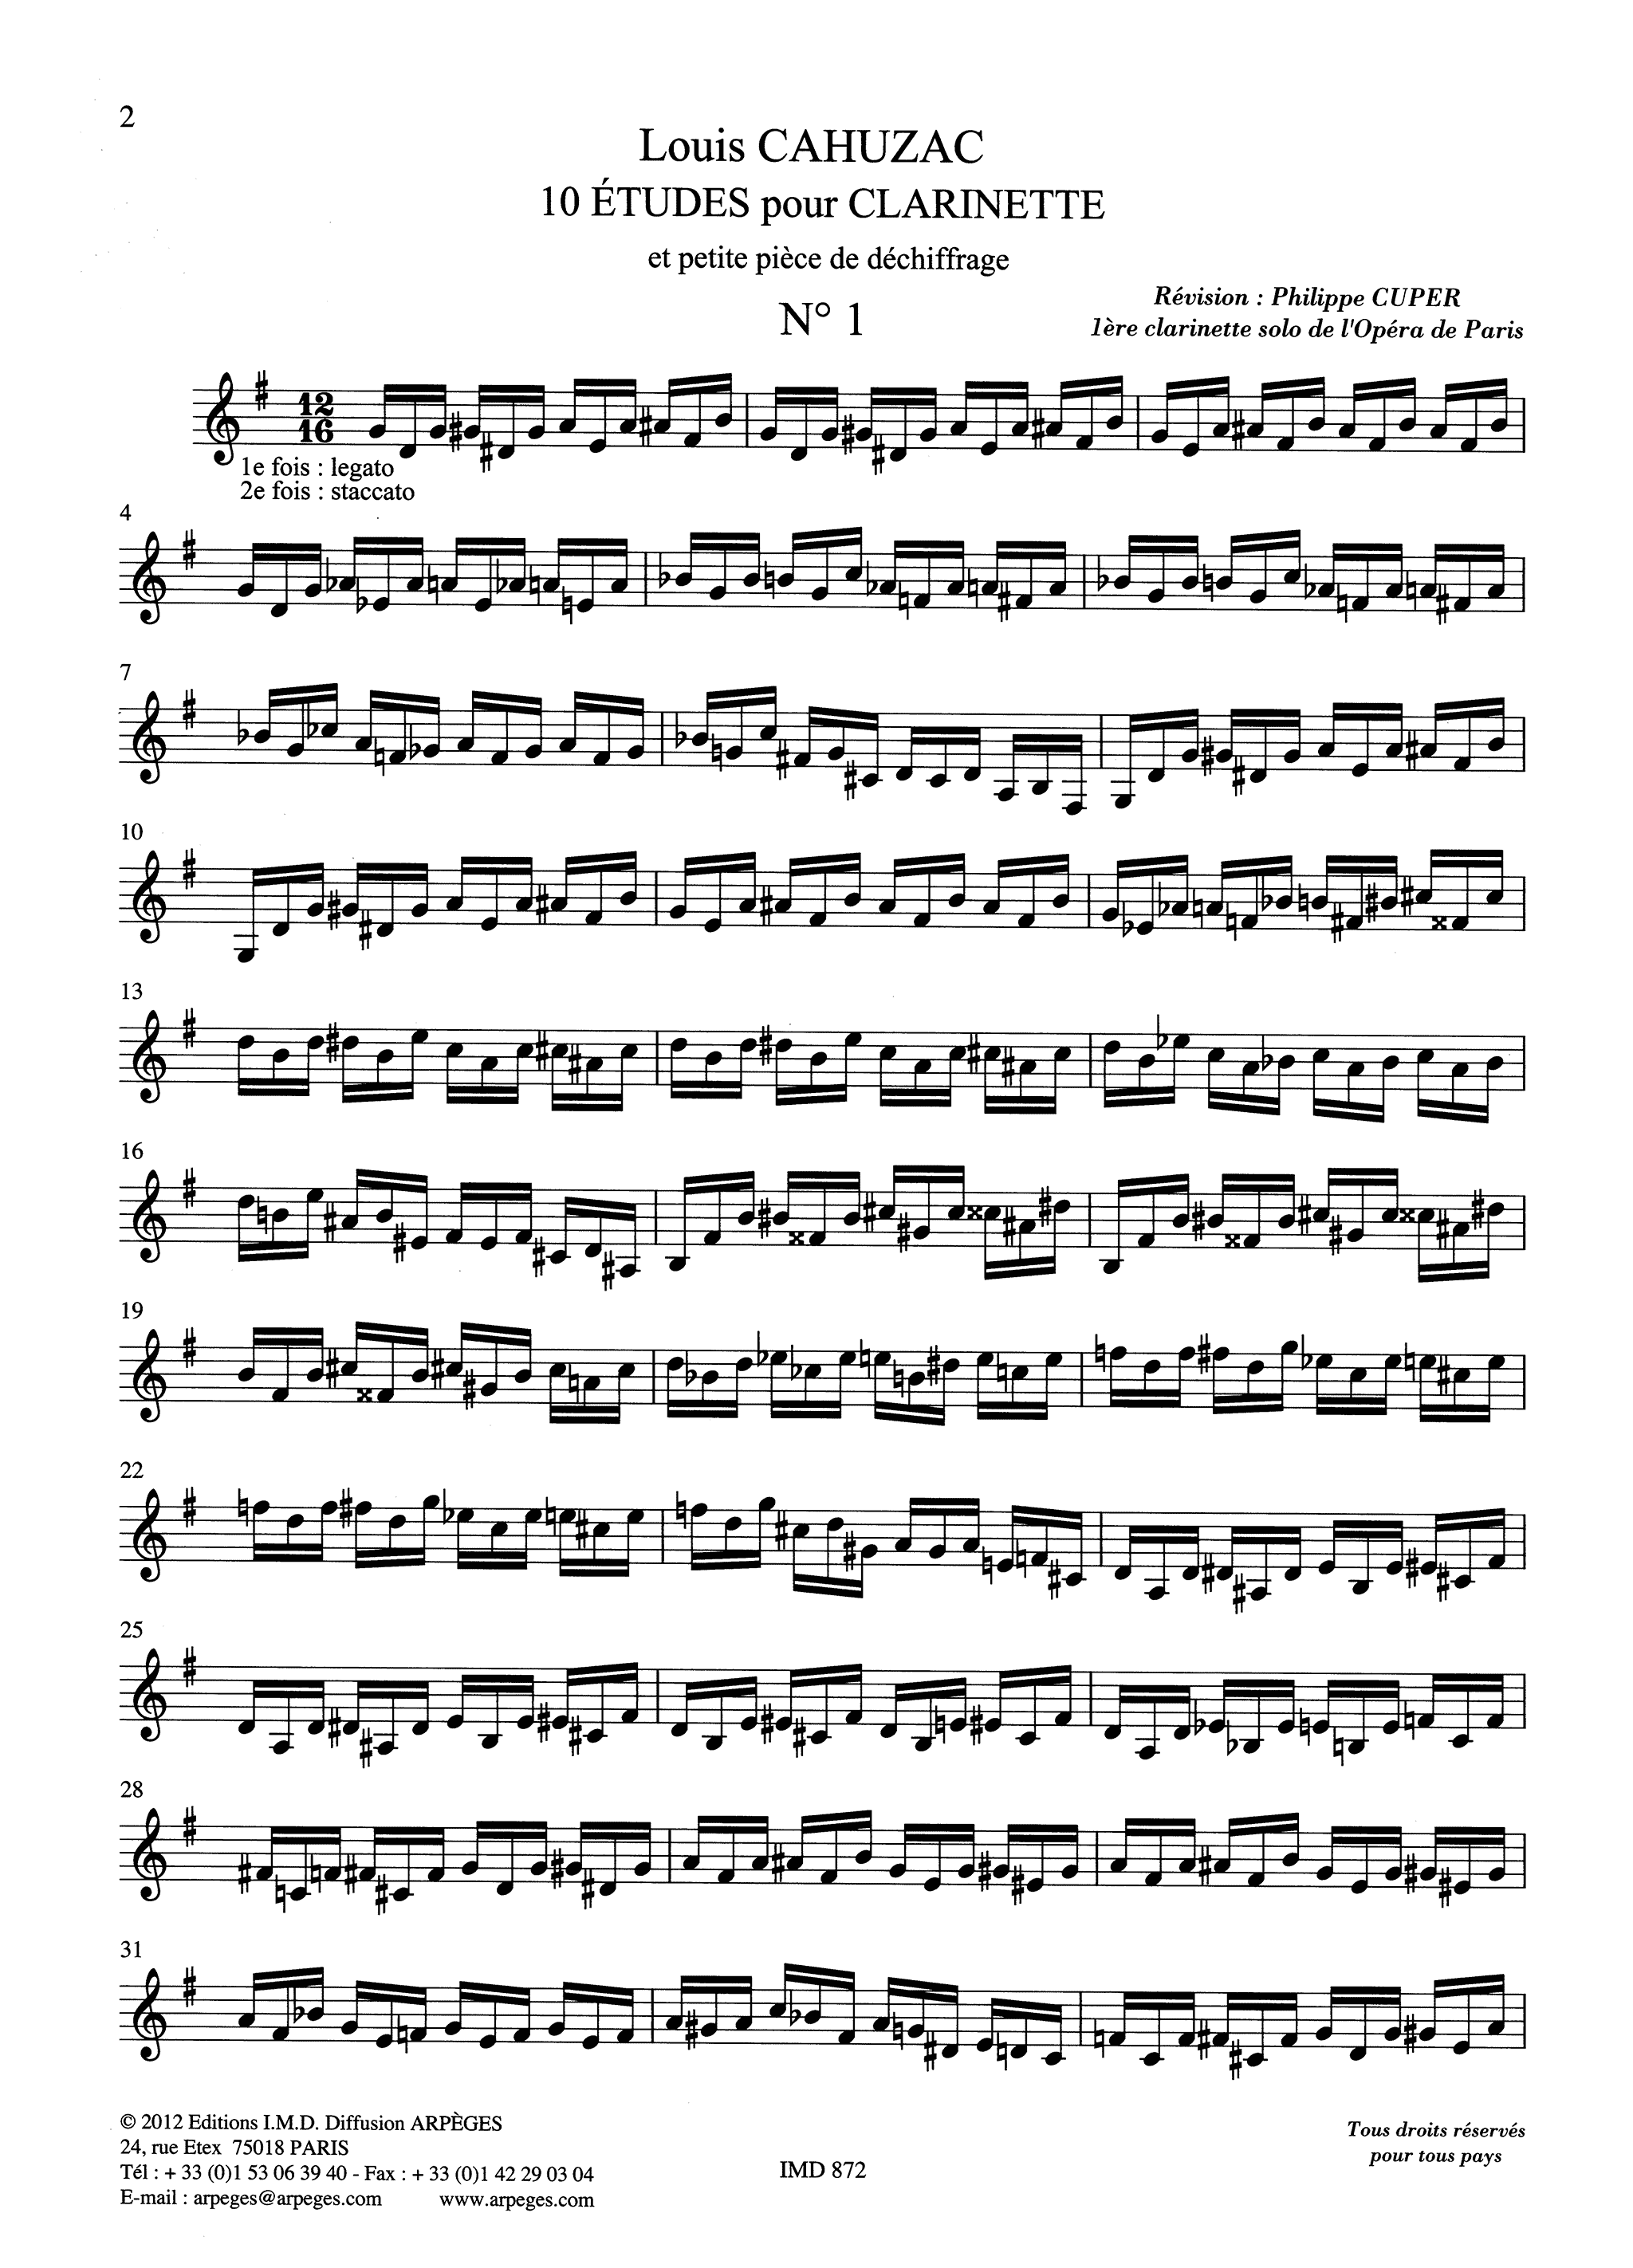 Louis Cahuzac 10 Clarinet Études page 2